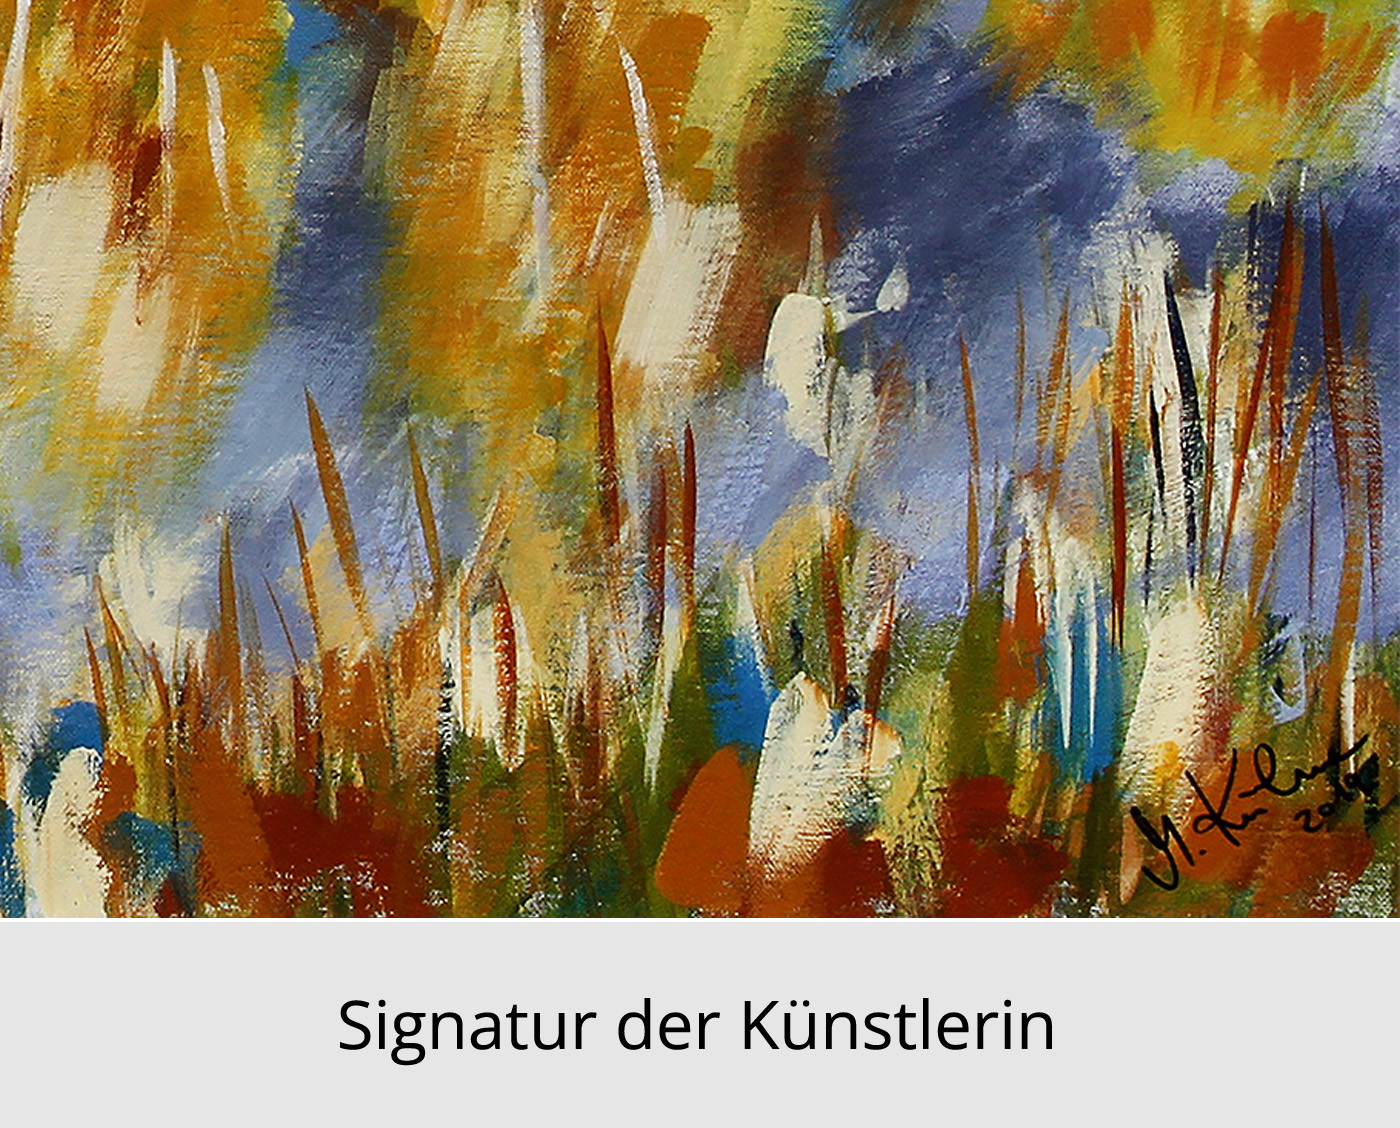 M. Kühne: "Herbstspaziergang am See", Edition, signierter Kunstdruck